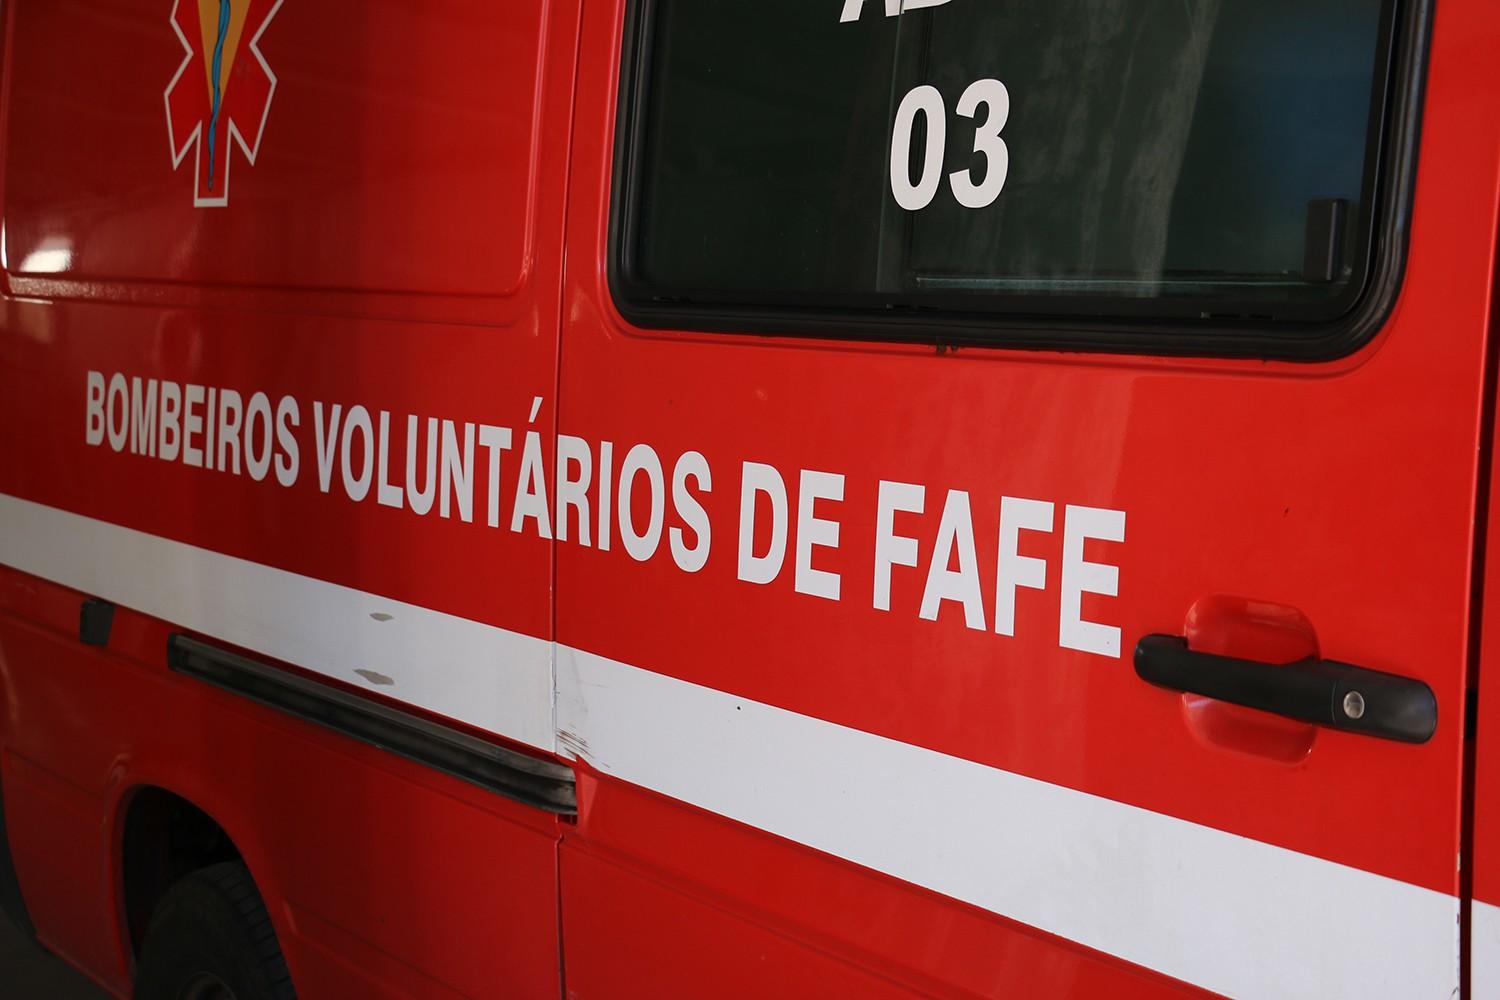 Atropelamento provoca ferido em Fafe